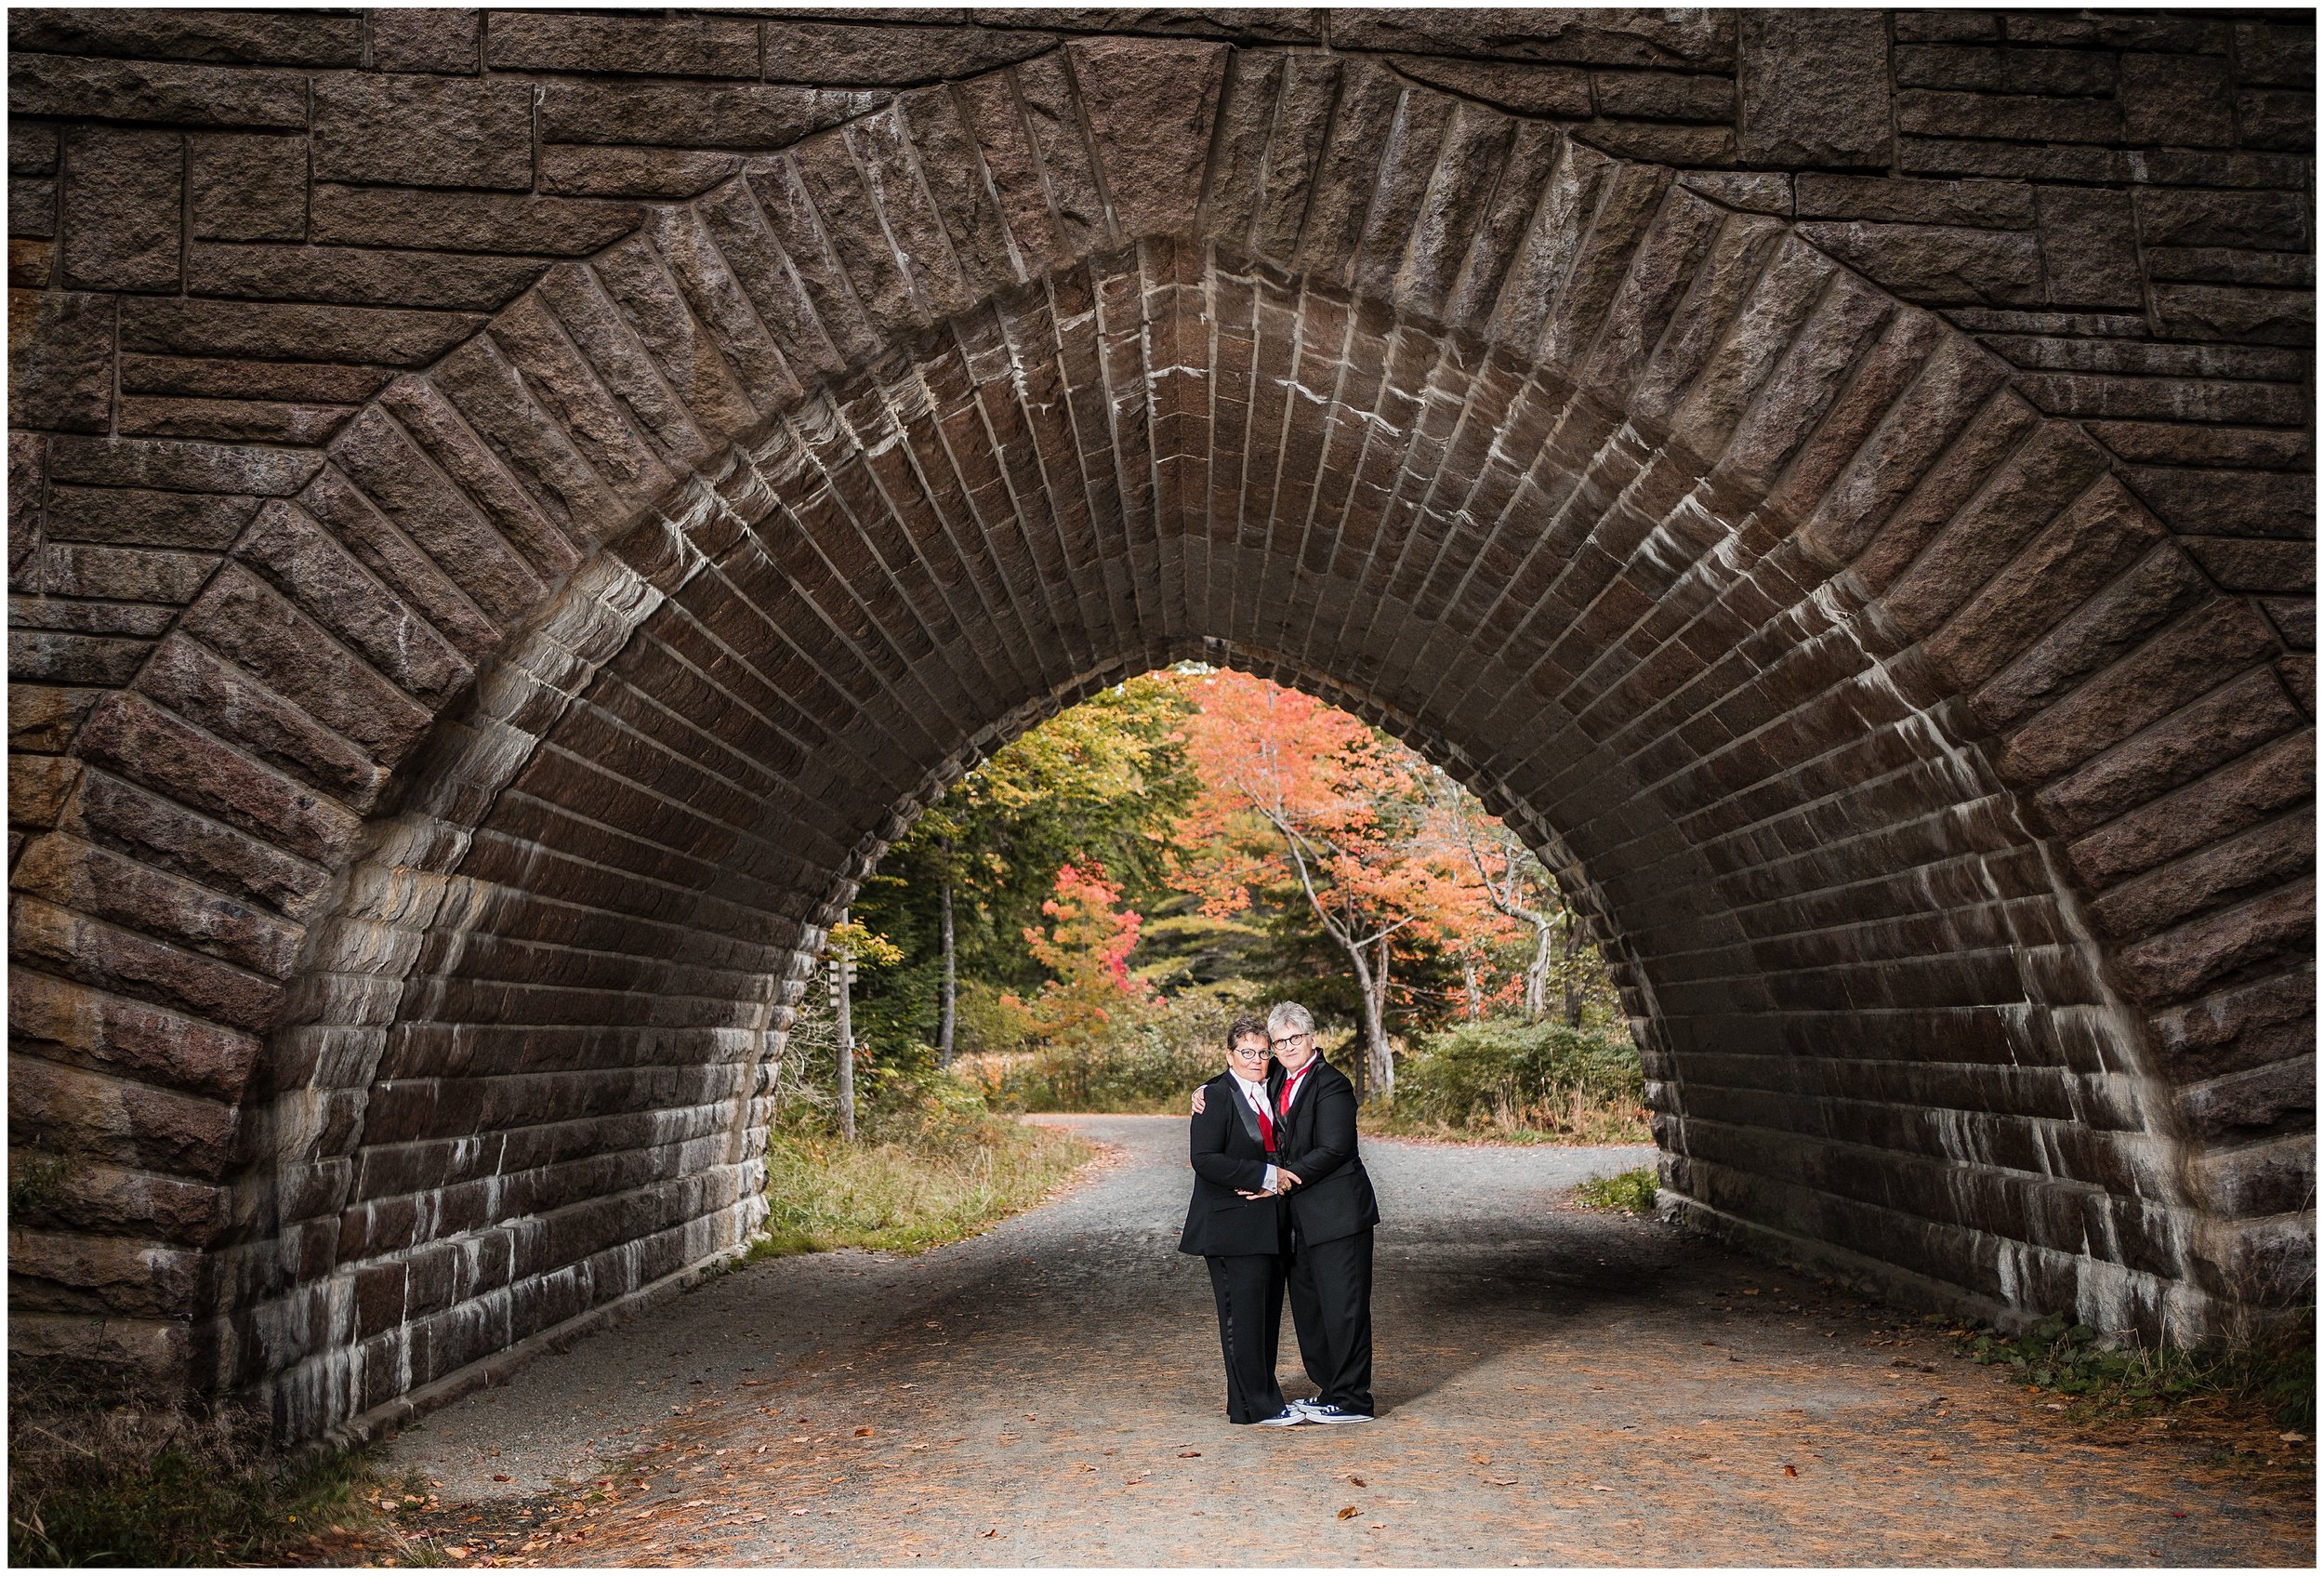 Acadia National Park Wedding Photographer, Bar Harbor Wedding Photographer, Two Adventurous Souls- 101022_0024.jpg